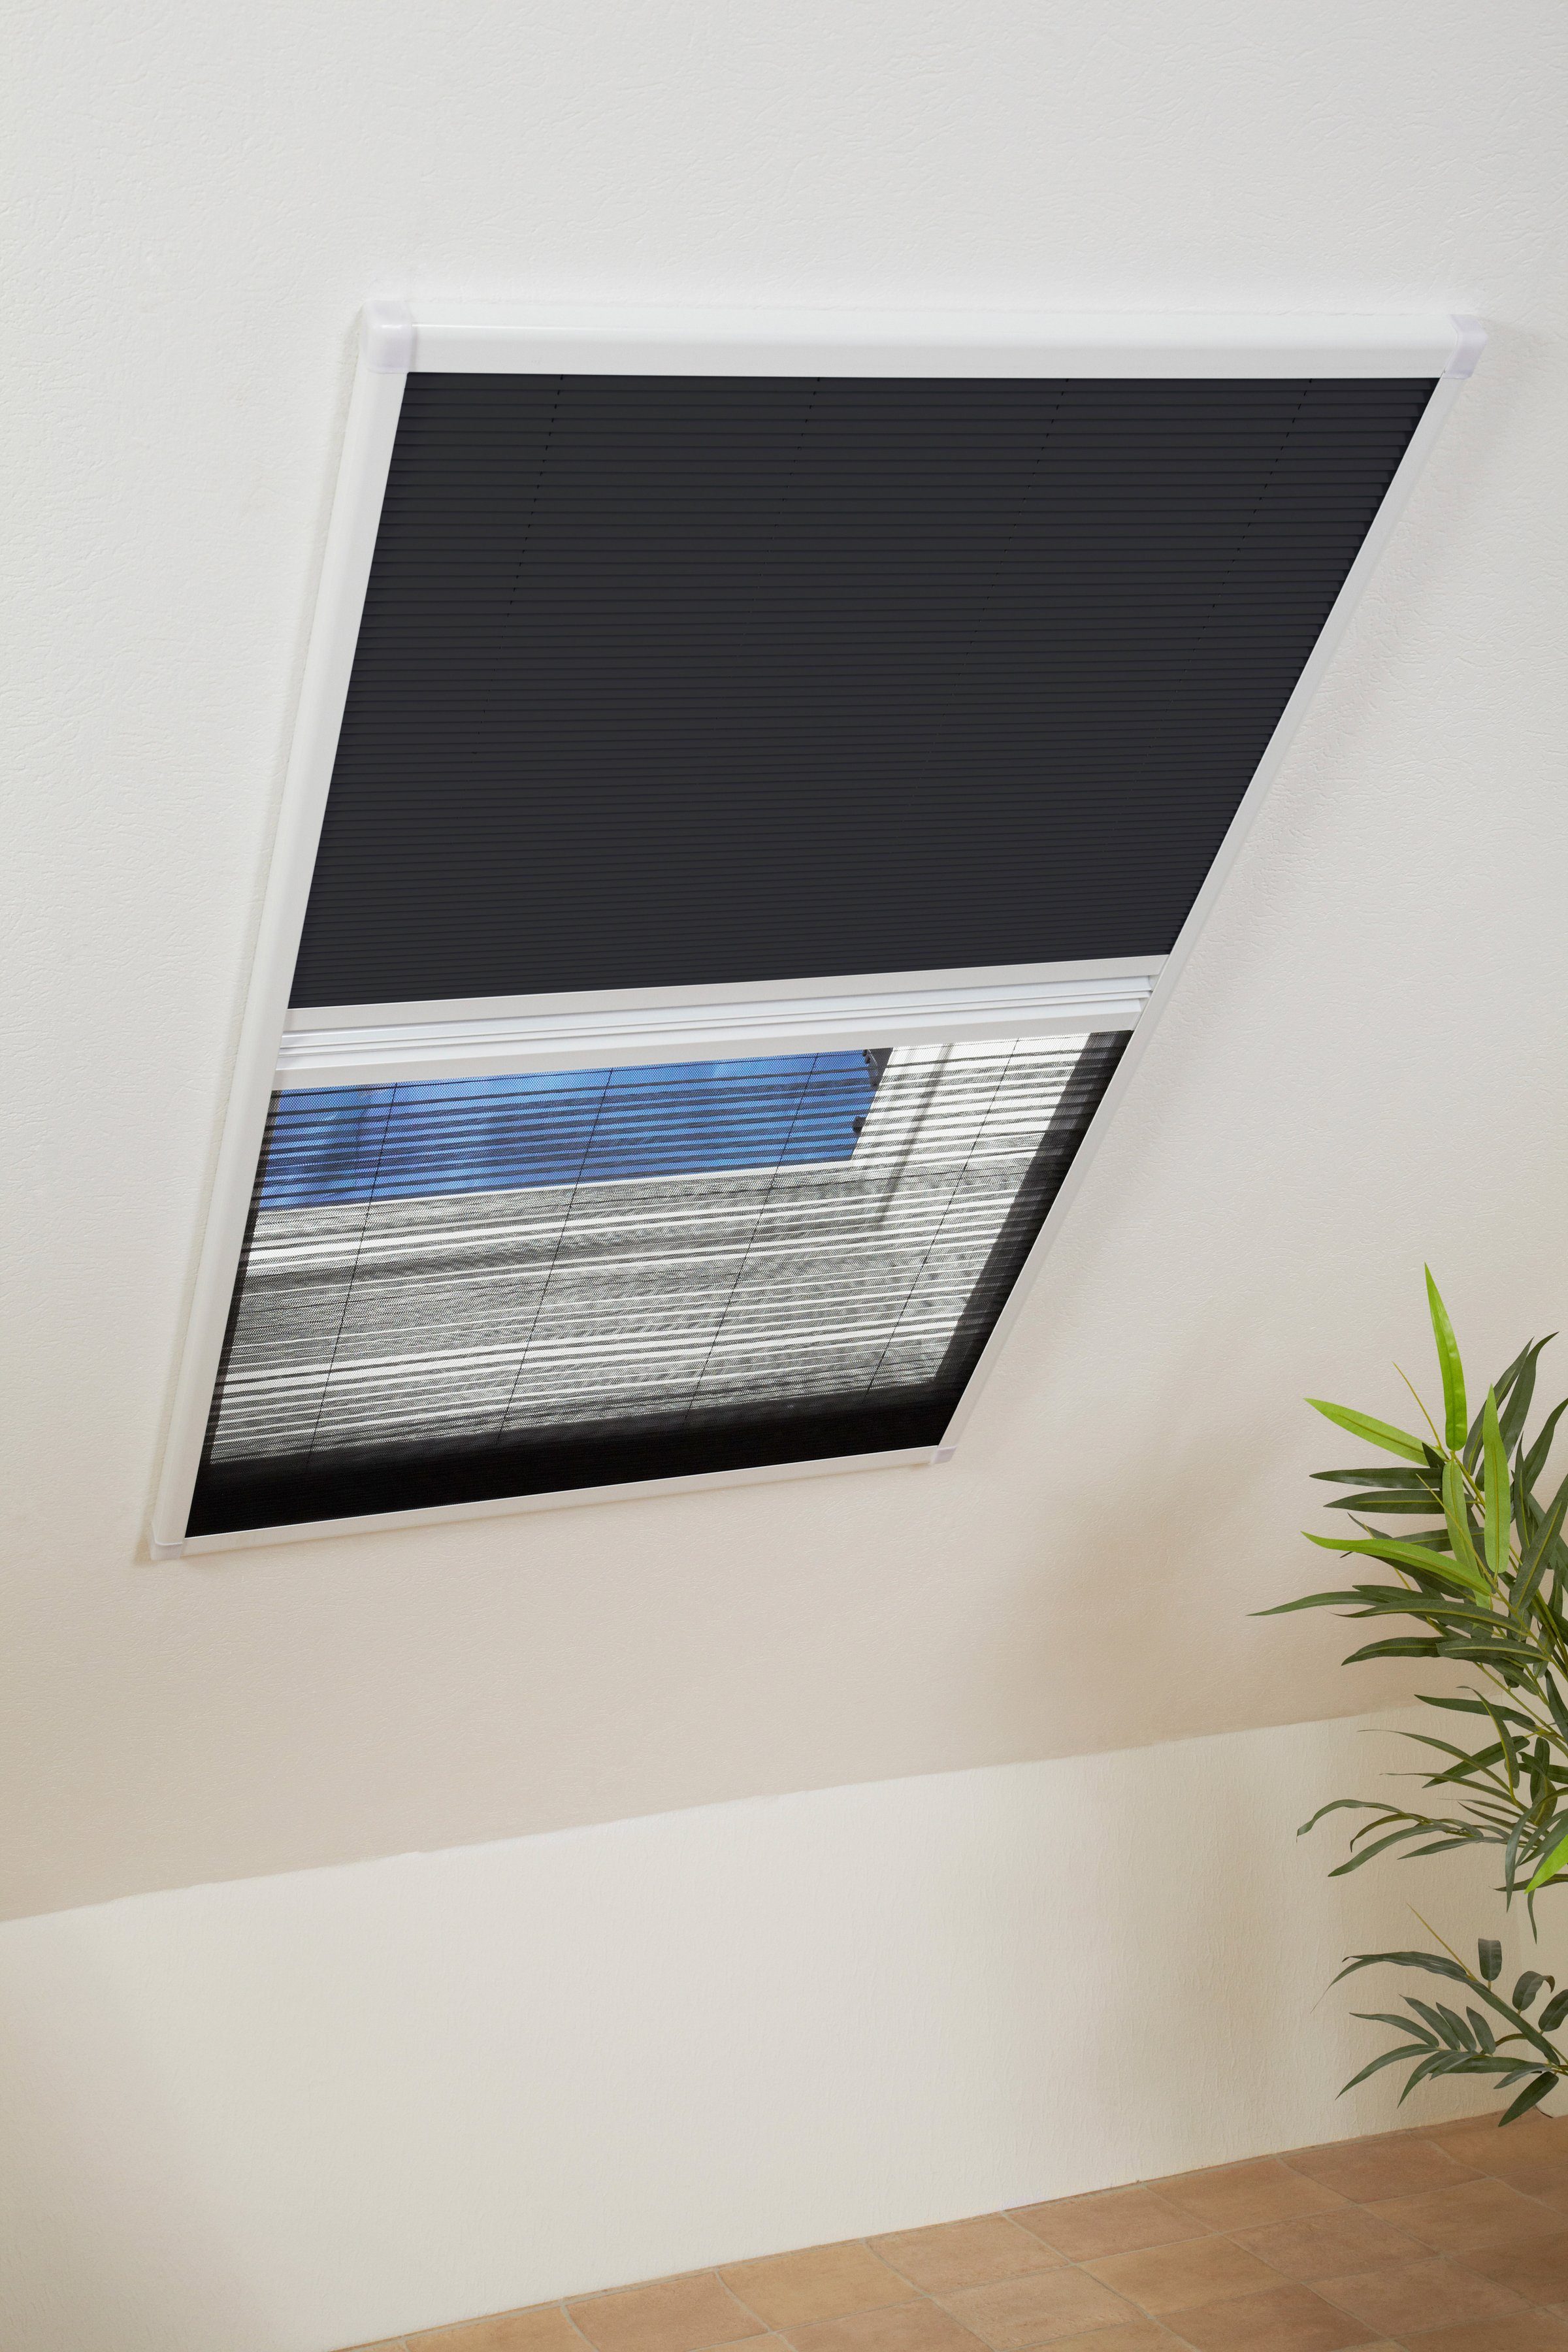 Insektenschutzrollo für Dachfenster, hecht international, transparent,  verschraubt, weiß/schwarz, BxH: 110x160 cm